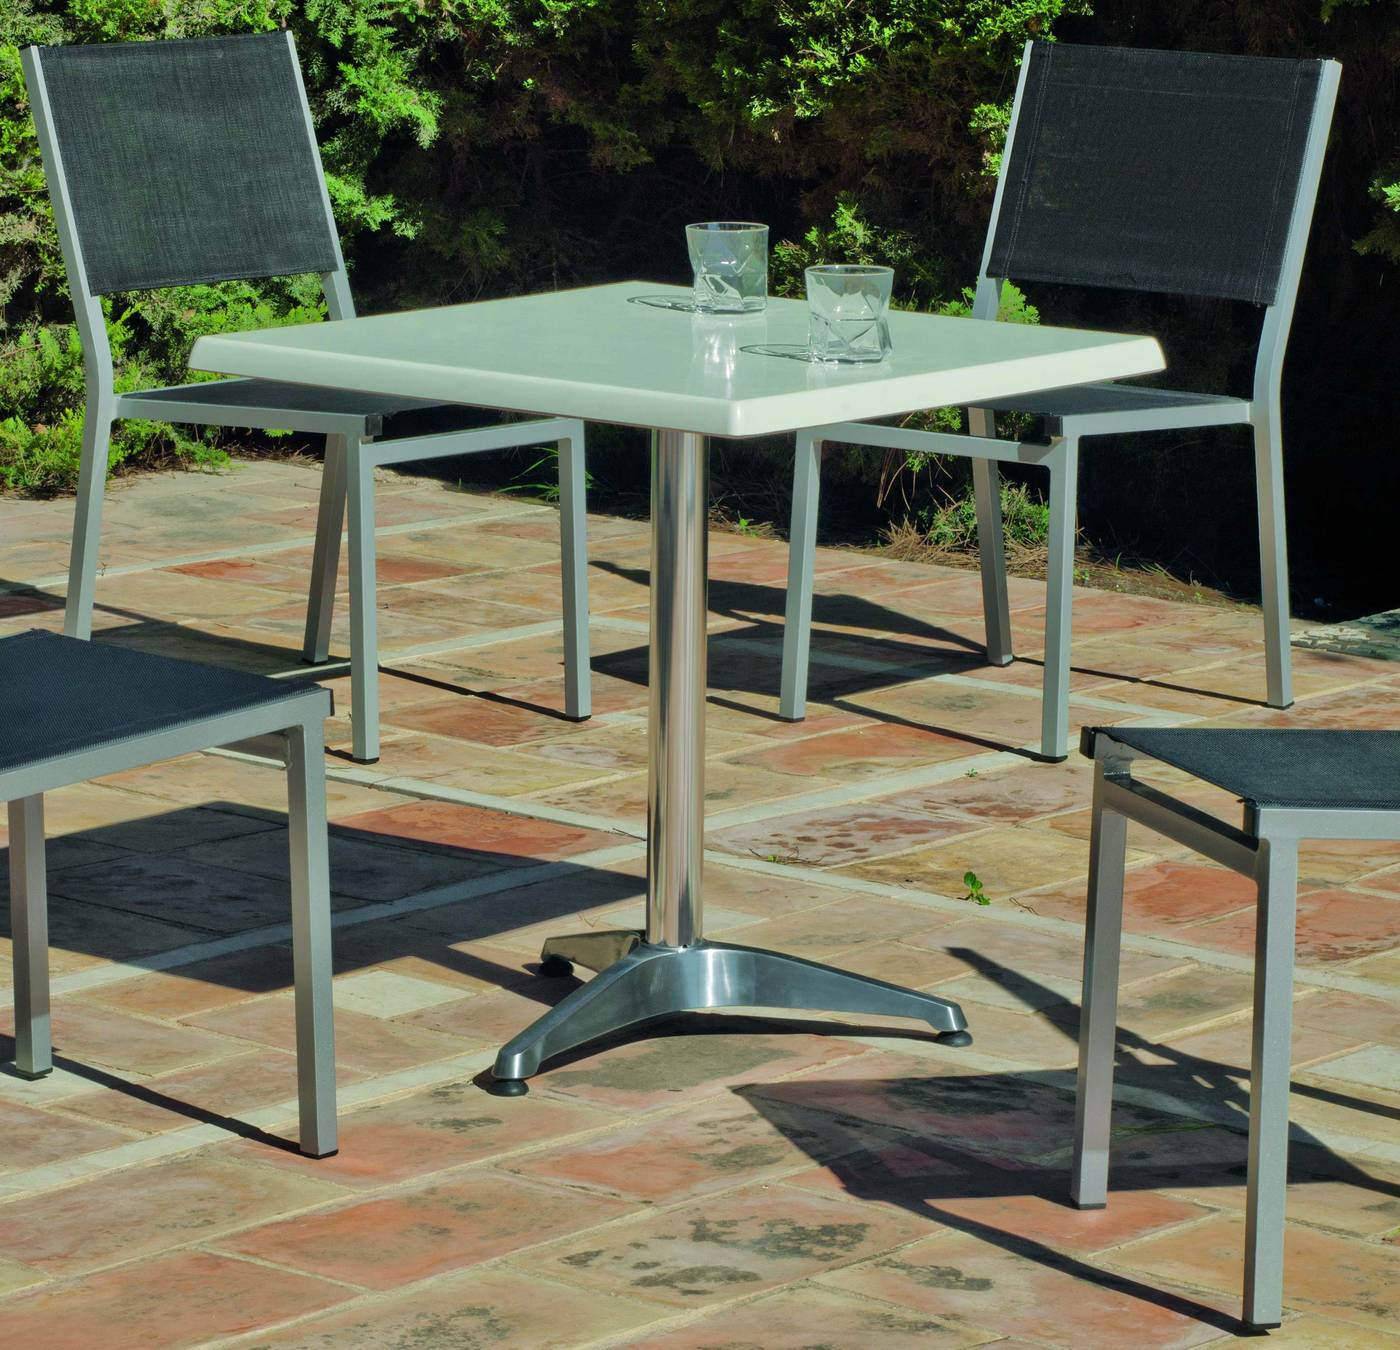 Set Aluminio Luna/Sion-70/4 - Conjunto aluminio: mesa cuadrada de aluminio, con tablero de Hevegalite  de 70 cm. y 4 sillas de aluminio color plata y textilen color gris